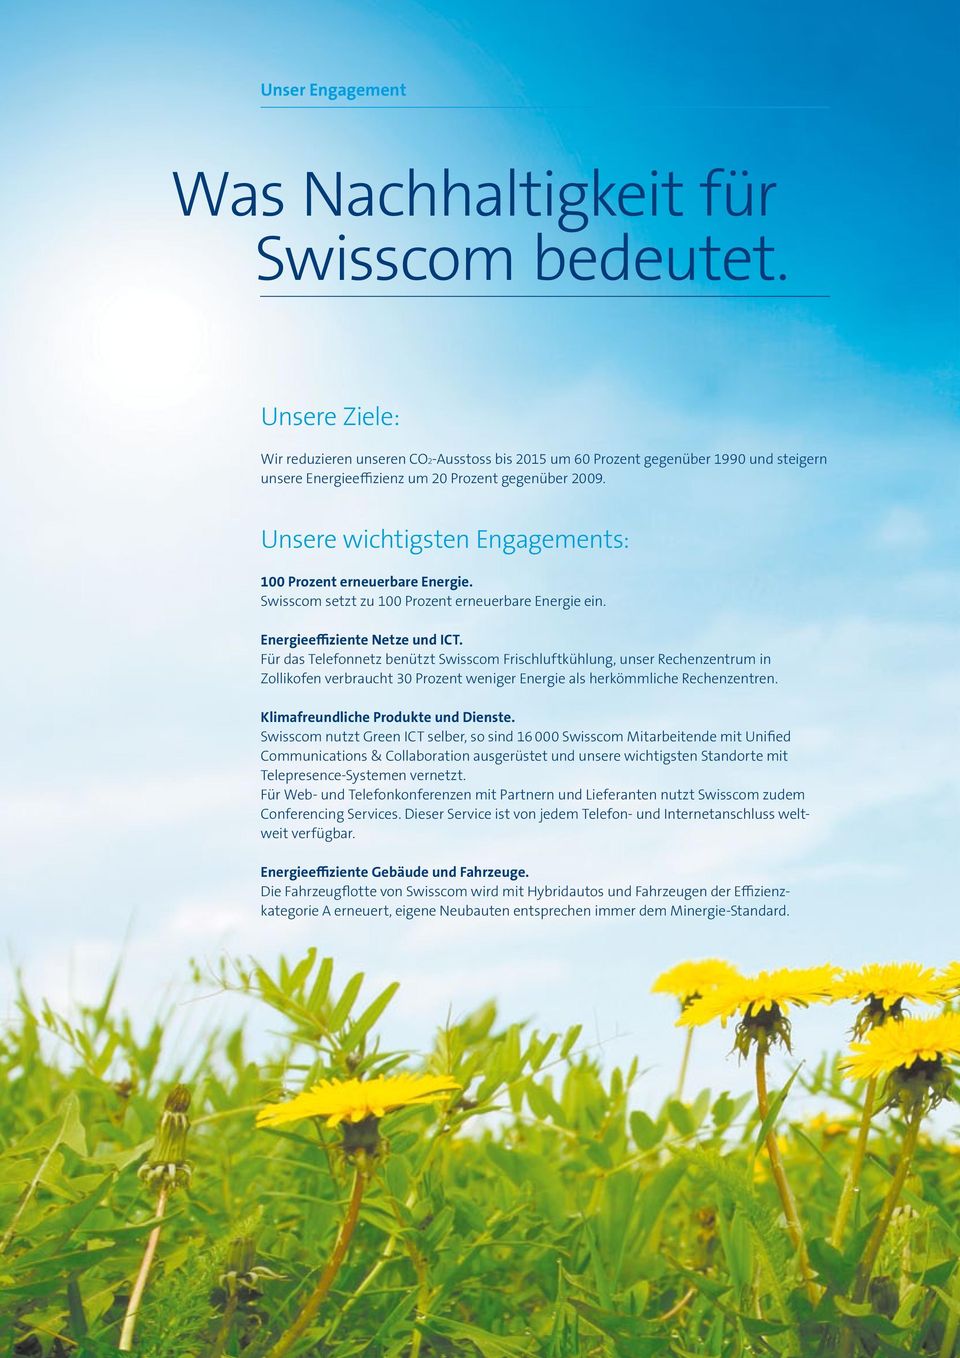 Unsere wichtigsten Engagements: 100 Prozent erneuerbare Energie. Swisscom setzt zu 100 Prozent erneuerbare Energie ein. Energieeffiziente Netze und ICT.